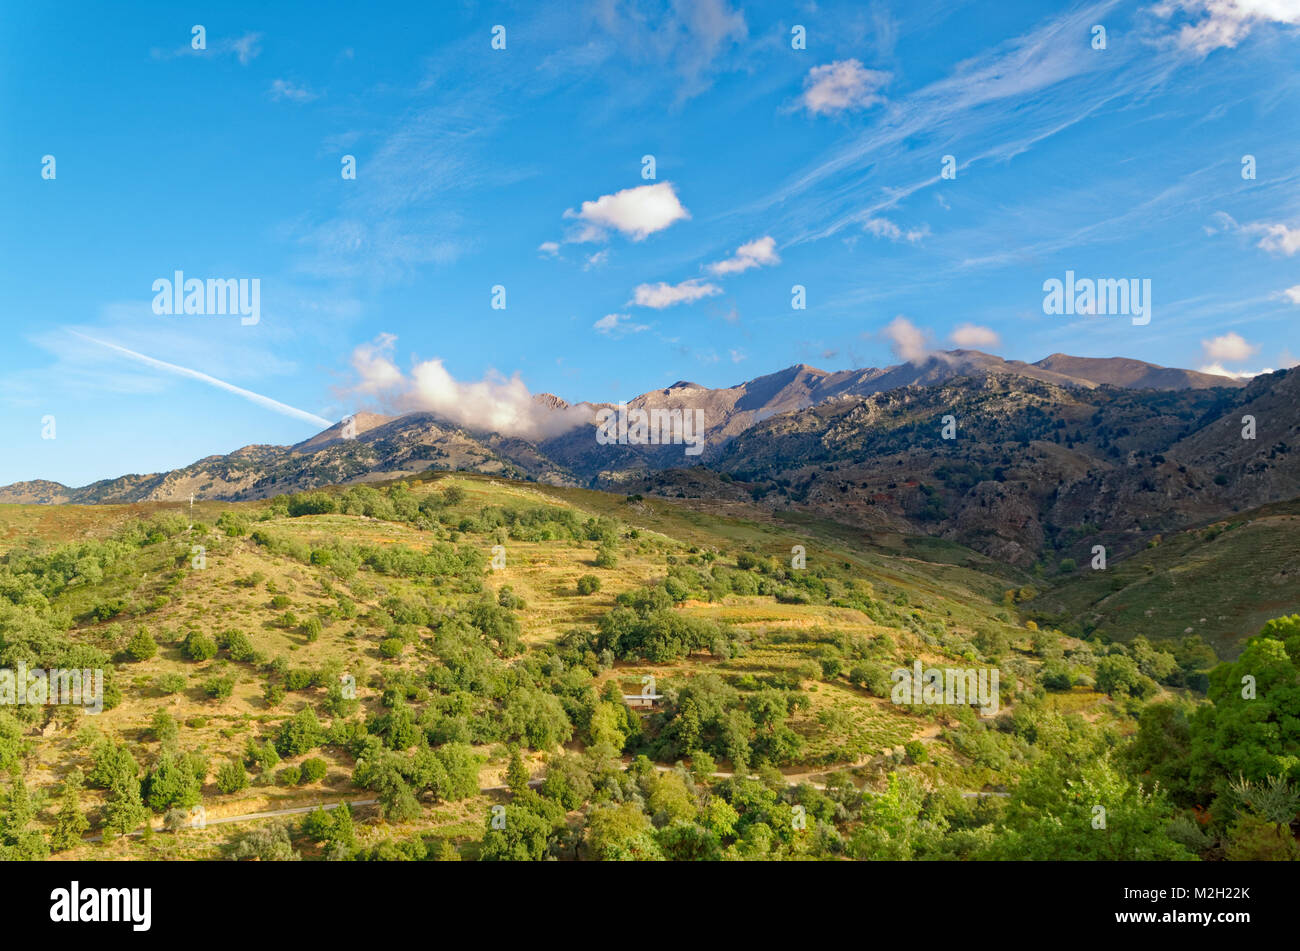 Berge und Wiesen unter blauem Himmel auf der Insel Grete, Griechenland Stockfoto